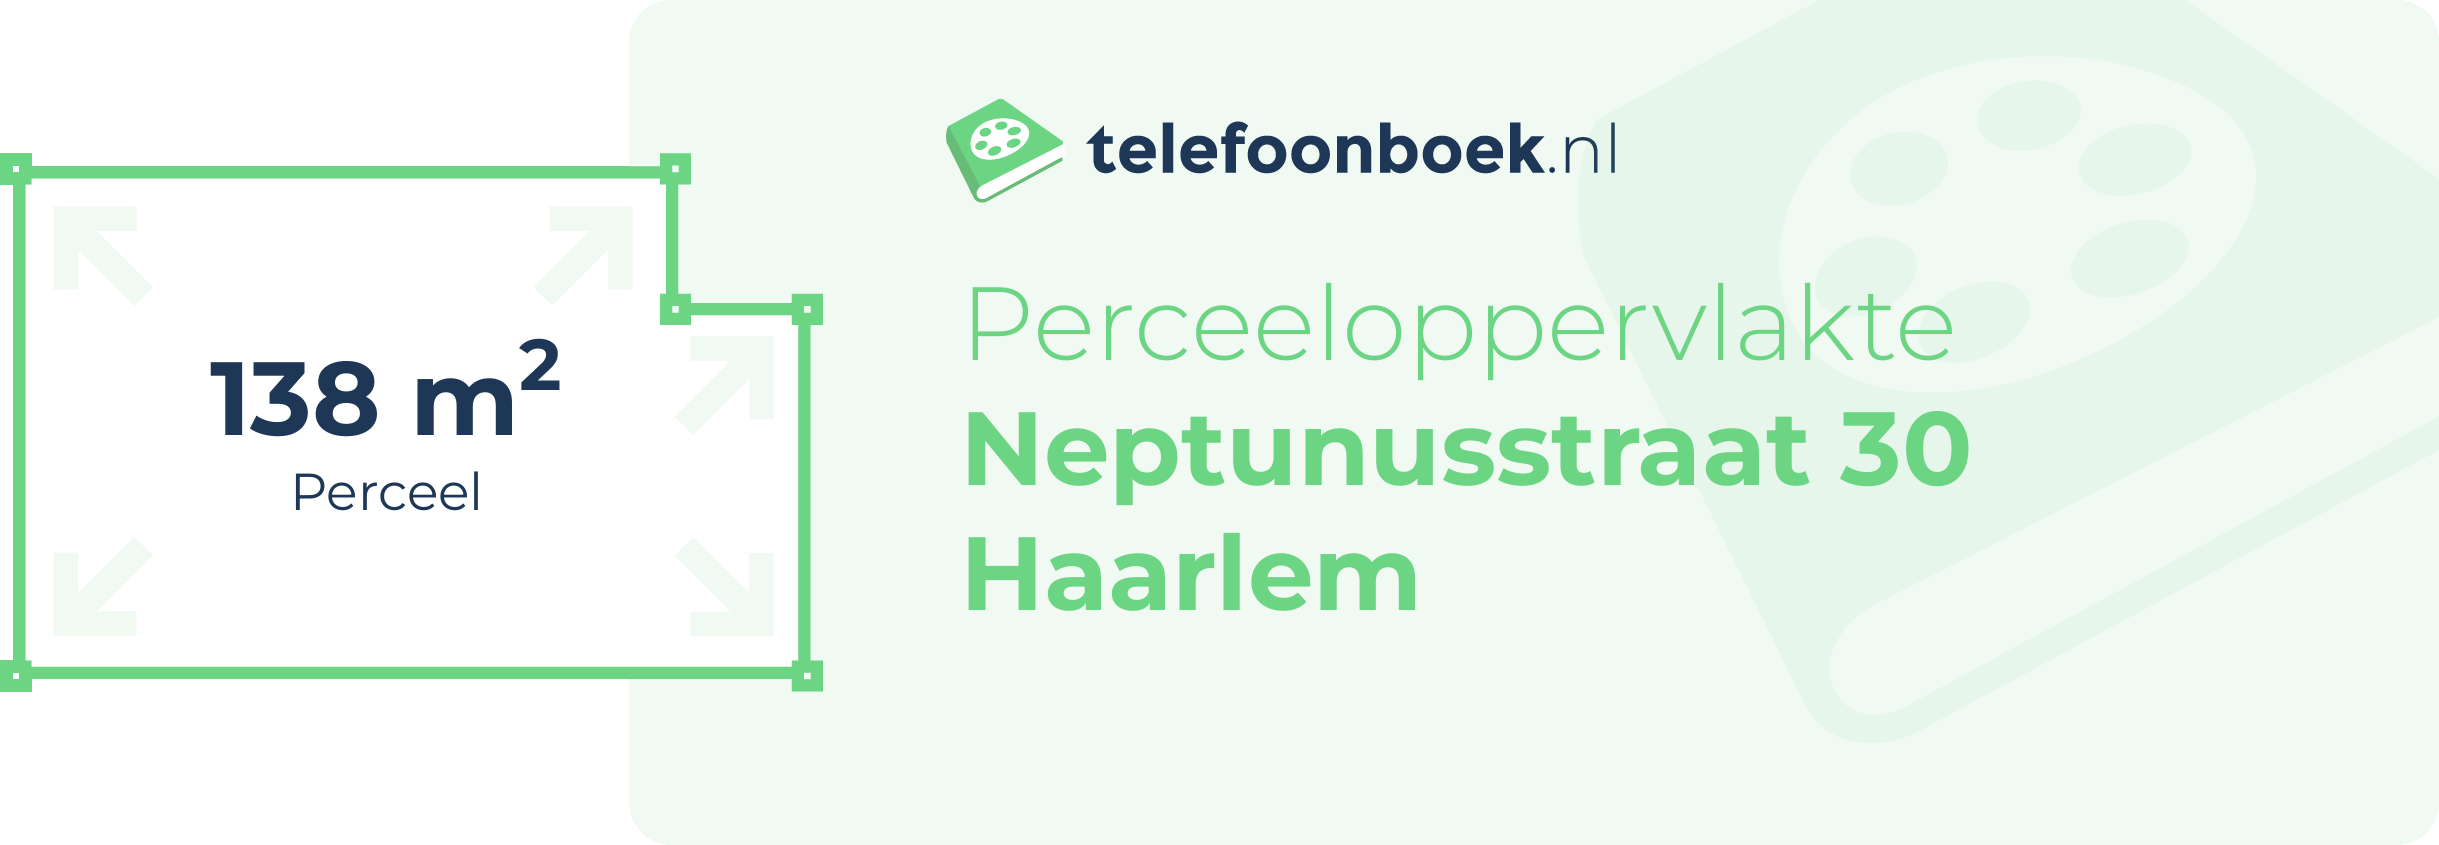 Perceeloppervlakte Neptunusstraat 30 Haarlem